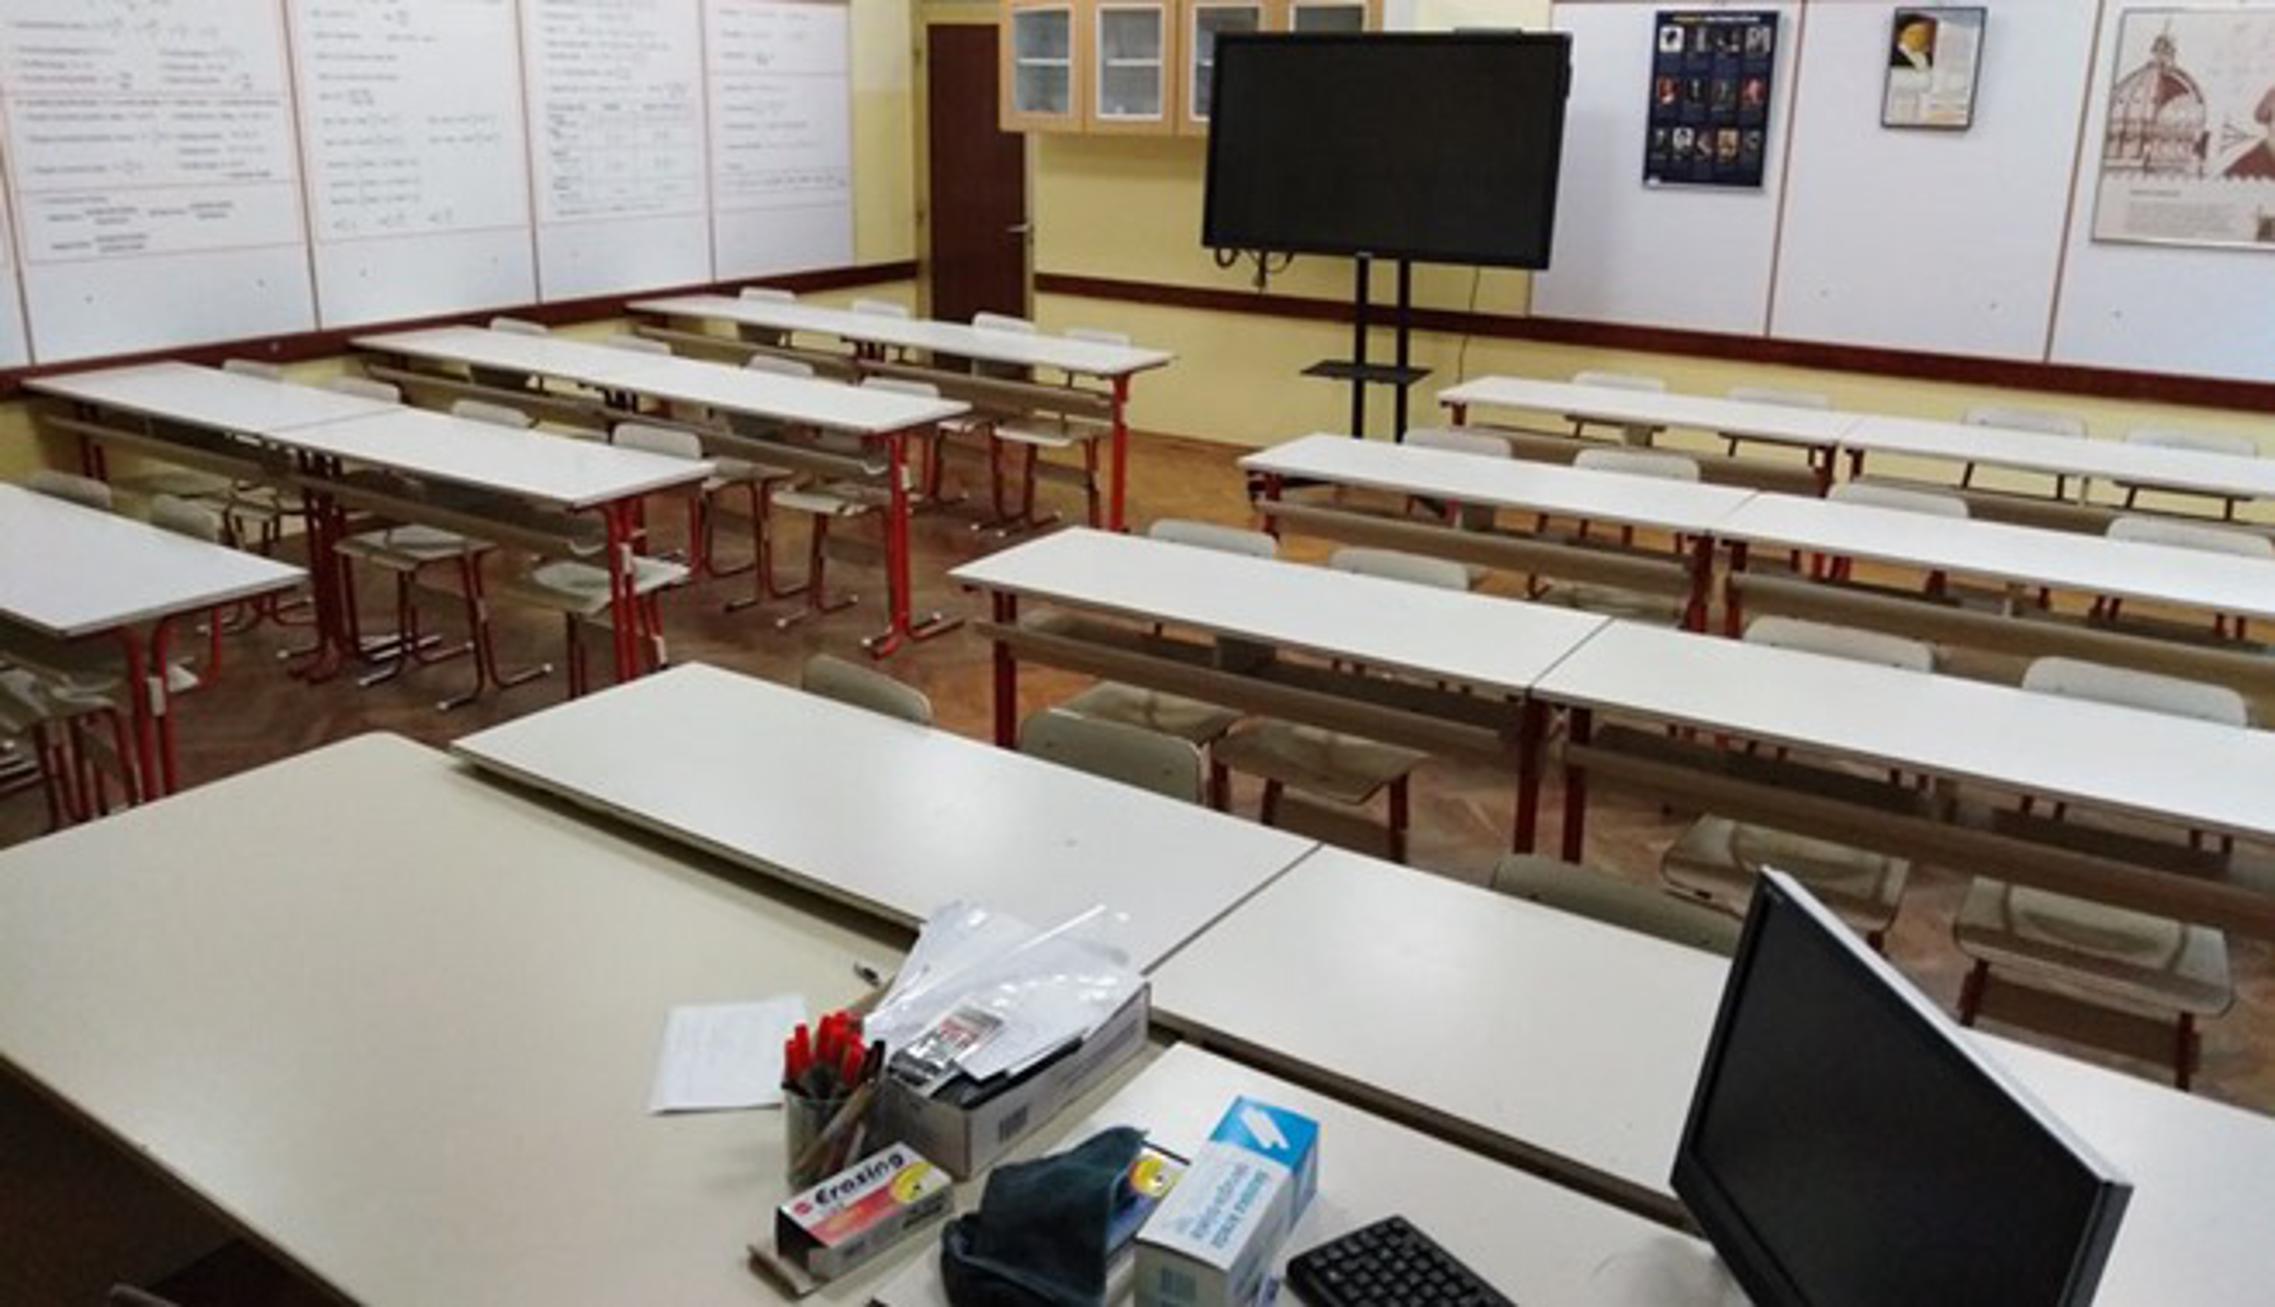 Prazna učionica slavonskobrodske Gimnazije tijekom prošlotjednog štrajka